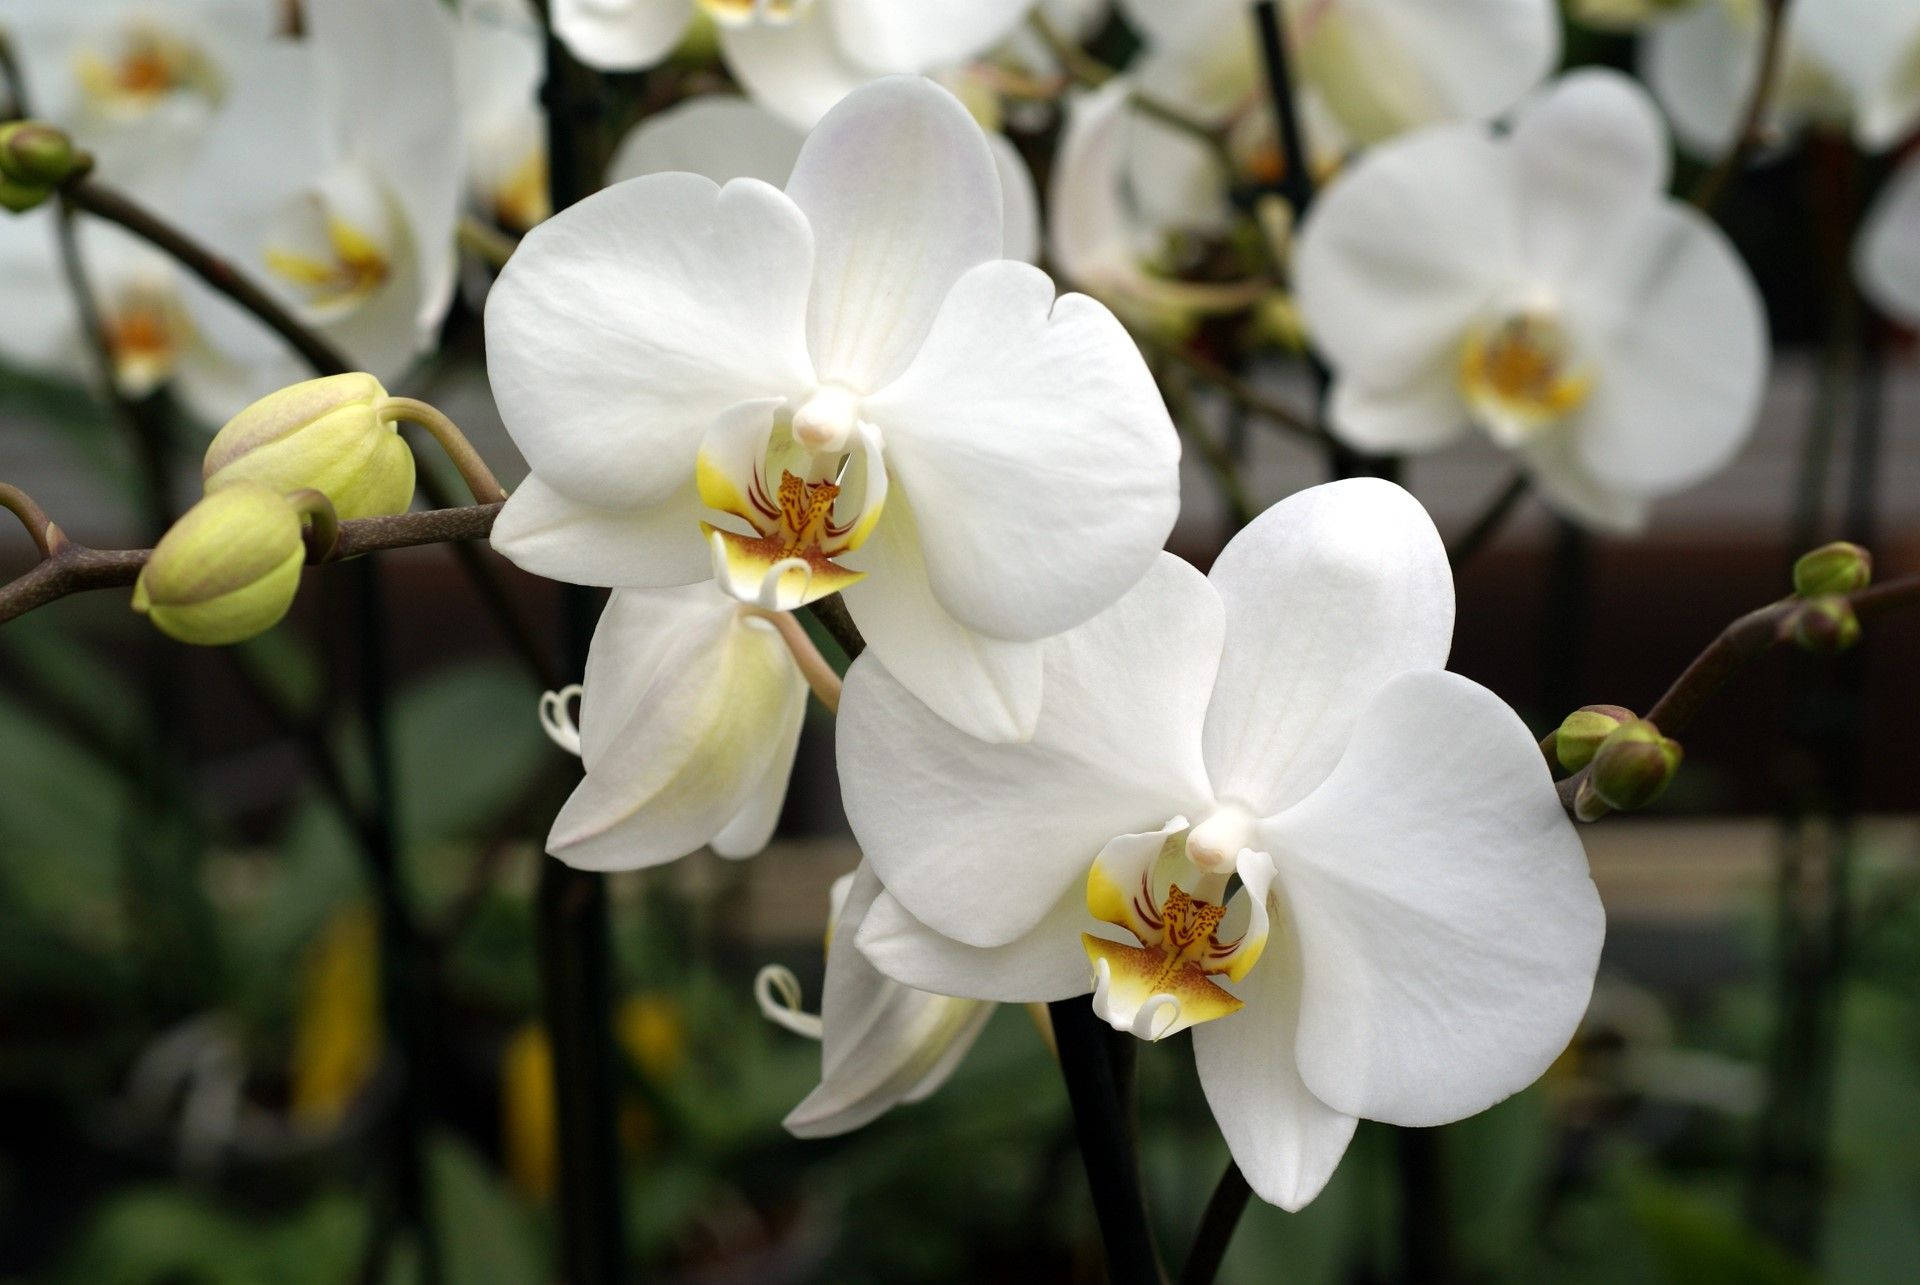 White Orchid On Dark Brown Stem Background